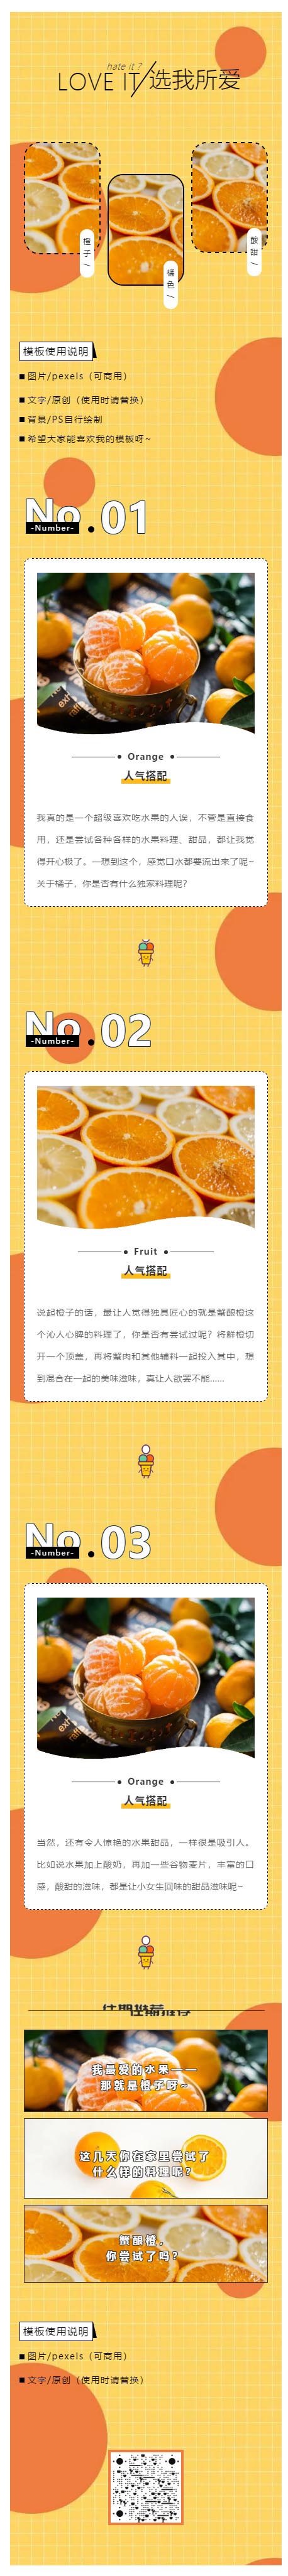 水果橙子橘色美食暖色网格背景图微信公众号推文模板